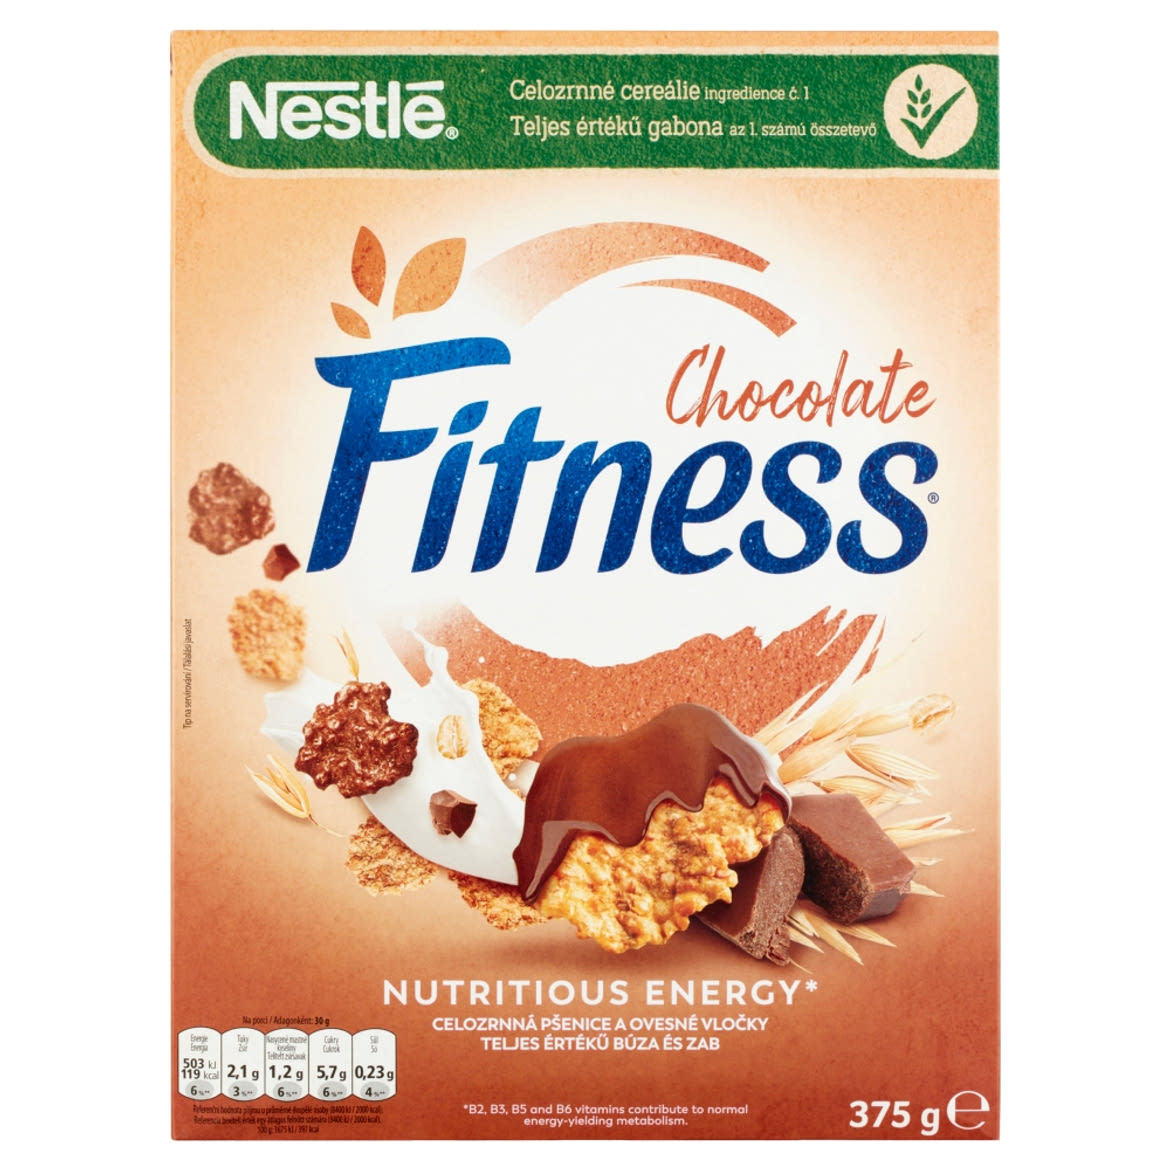 Nestlé Fitness Chocolate natúr, tej- és étcsokoládéval bevont teljes értékű gabonapehely